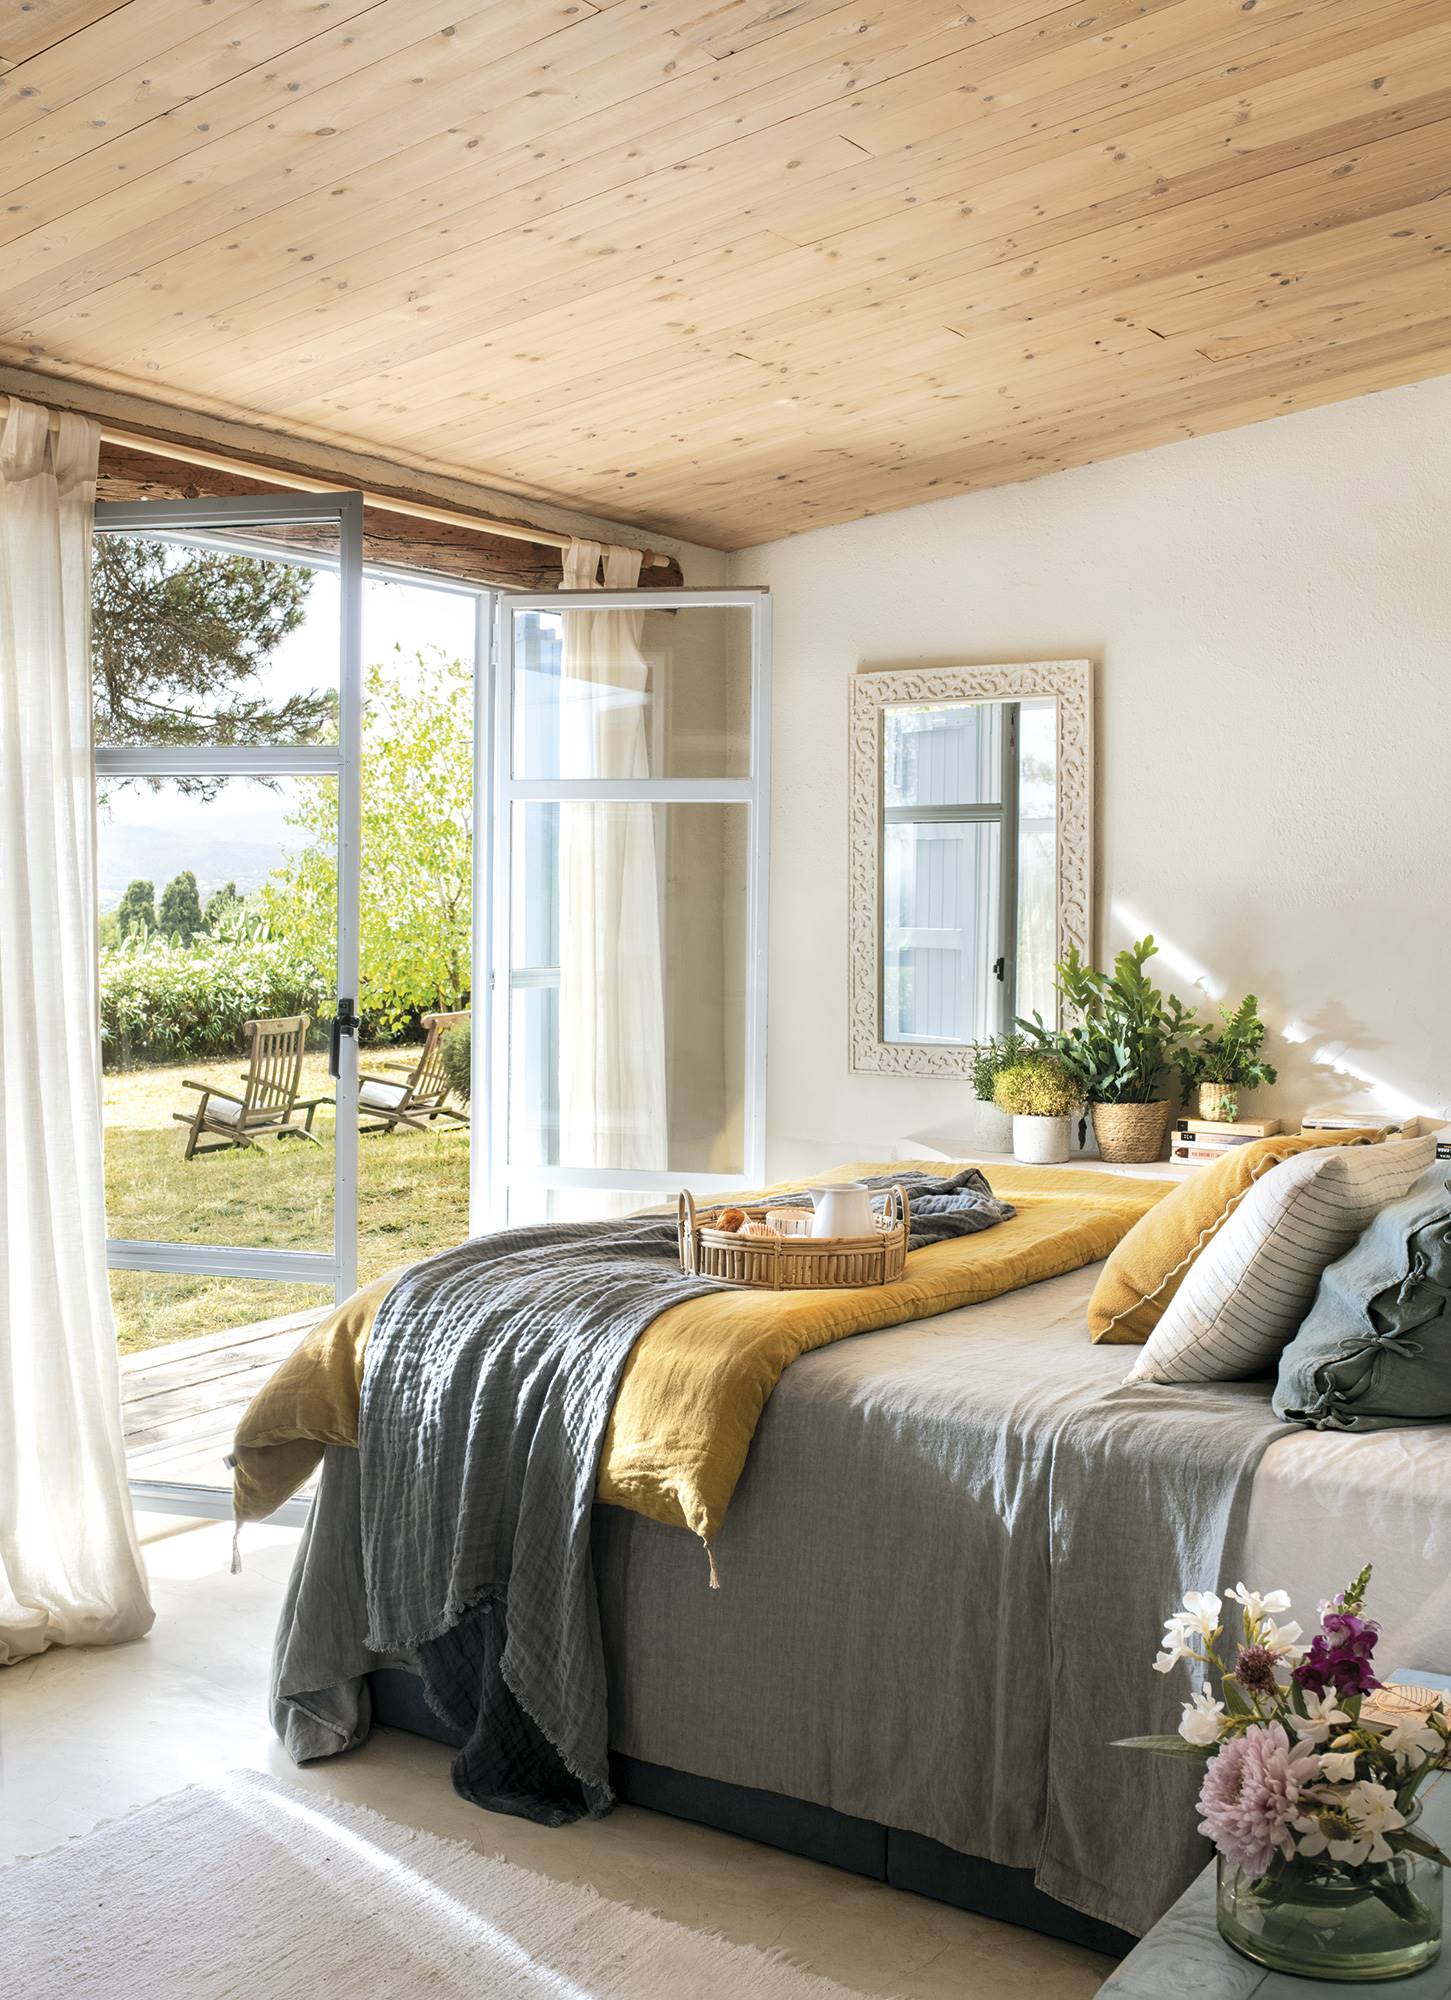 Dormitorio mediterráneo y veraniego con techo de madera.